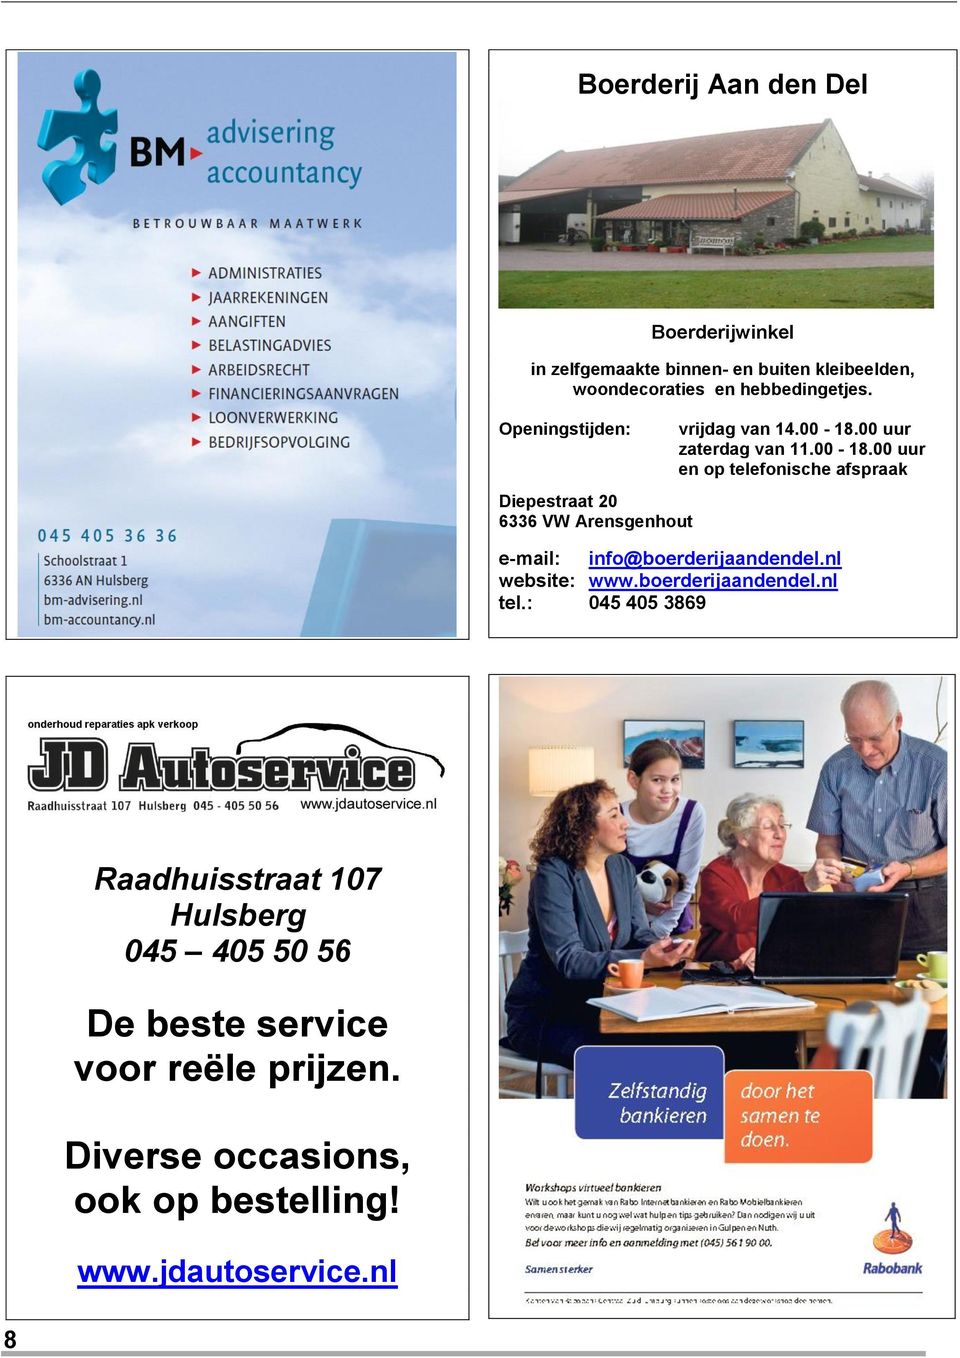 00 uur zaterdag van 11.00-18.00 uur en op telefonische afspraak e-mail: info@boerderijaandendel.nl website: www.